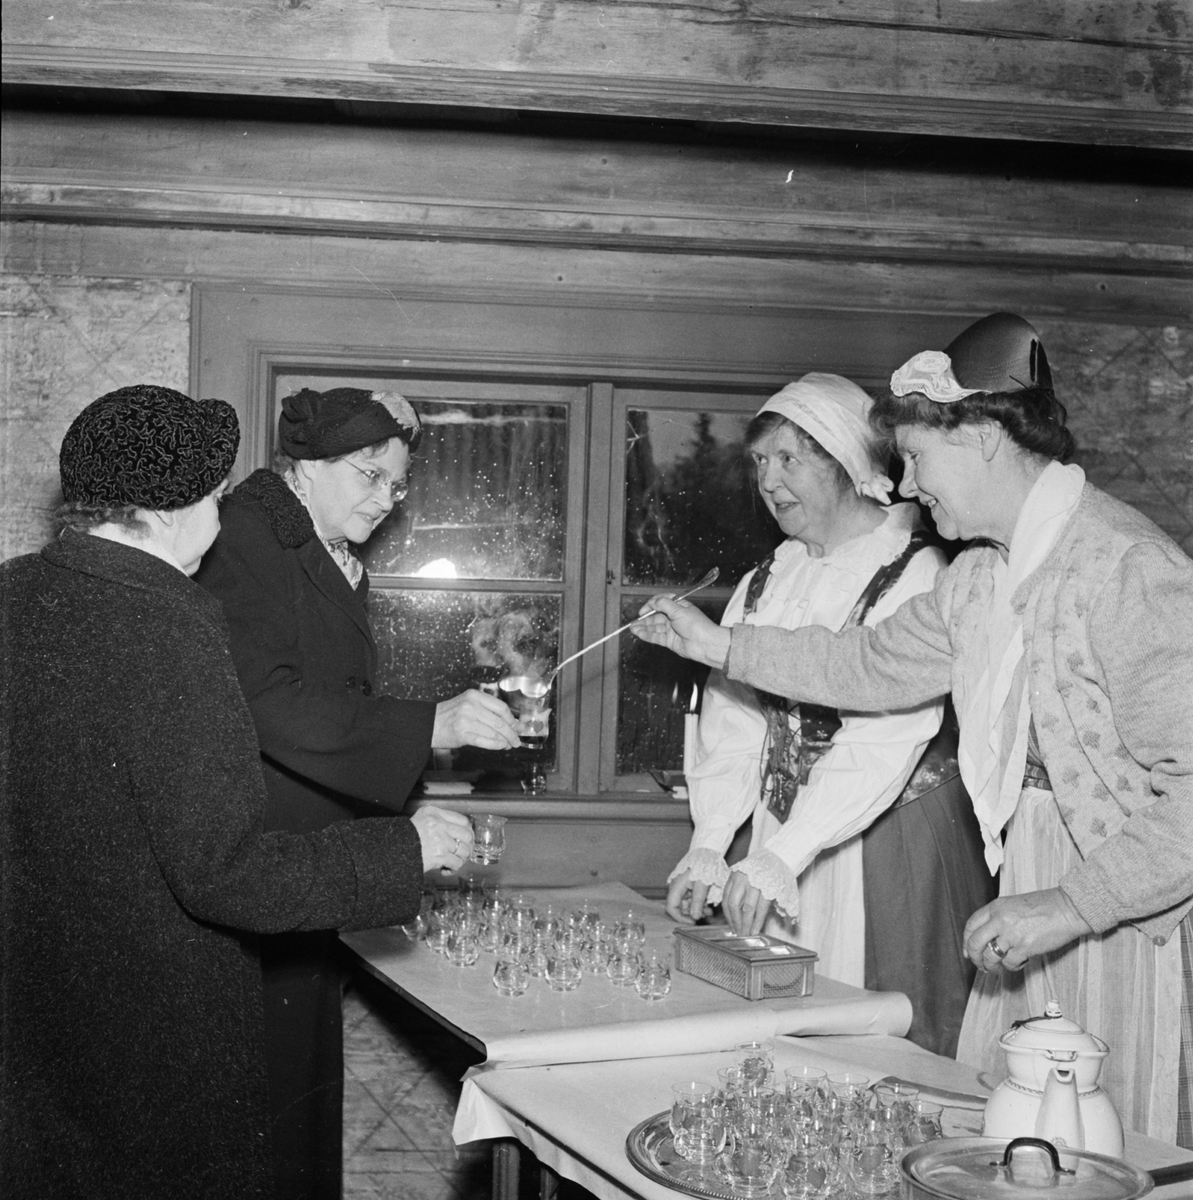 Försäljning av glögg på Disagården, Gamla Uppsala 1954